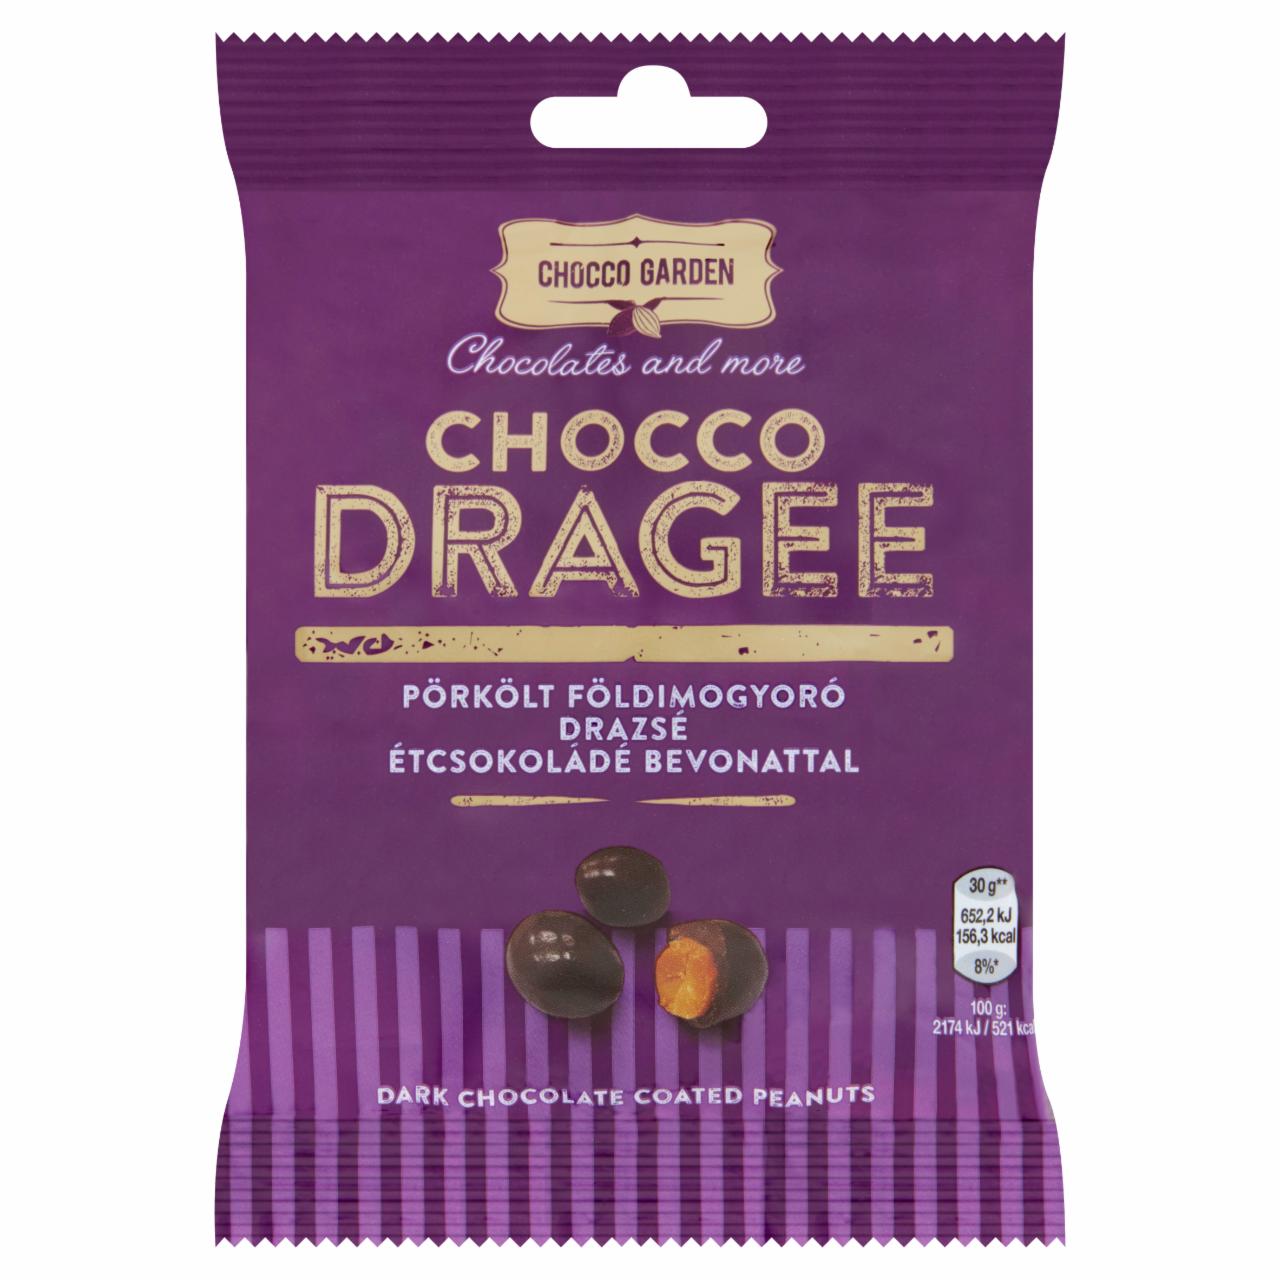 Képek - Chocco Garden Chocco Dragee pörkölt földimogyoró drazsé étcsokoládé bevonattal 60 g